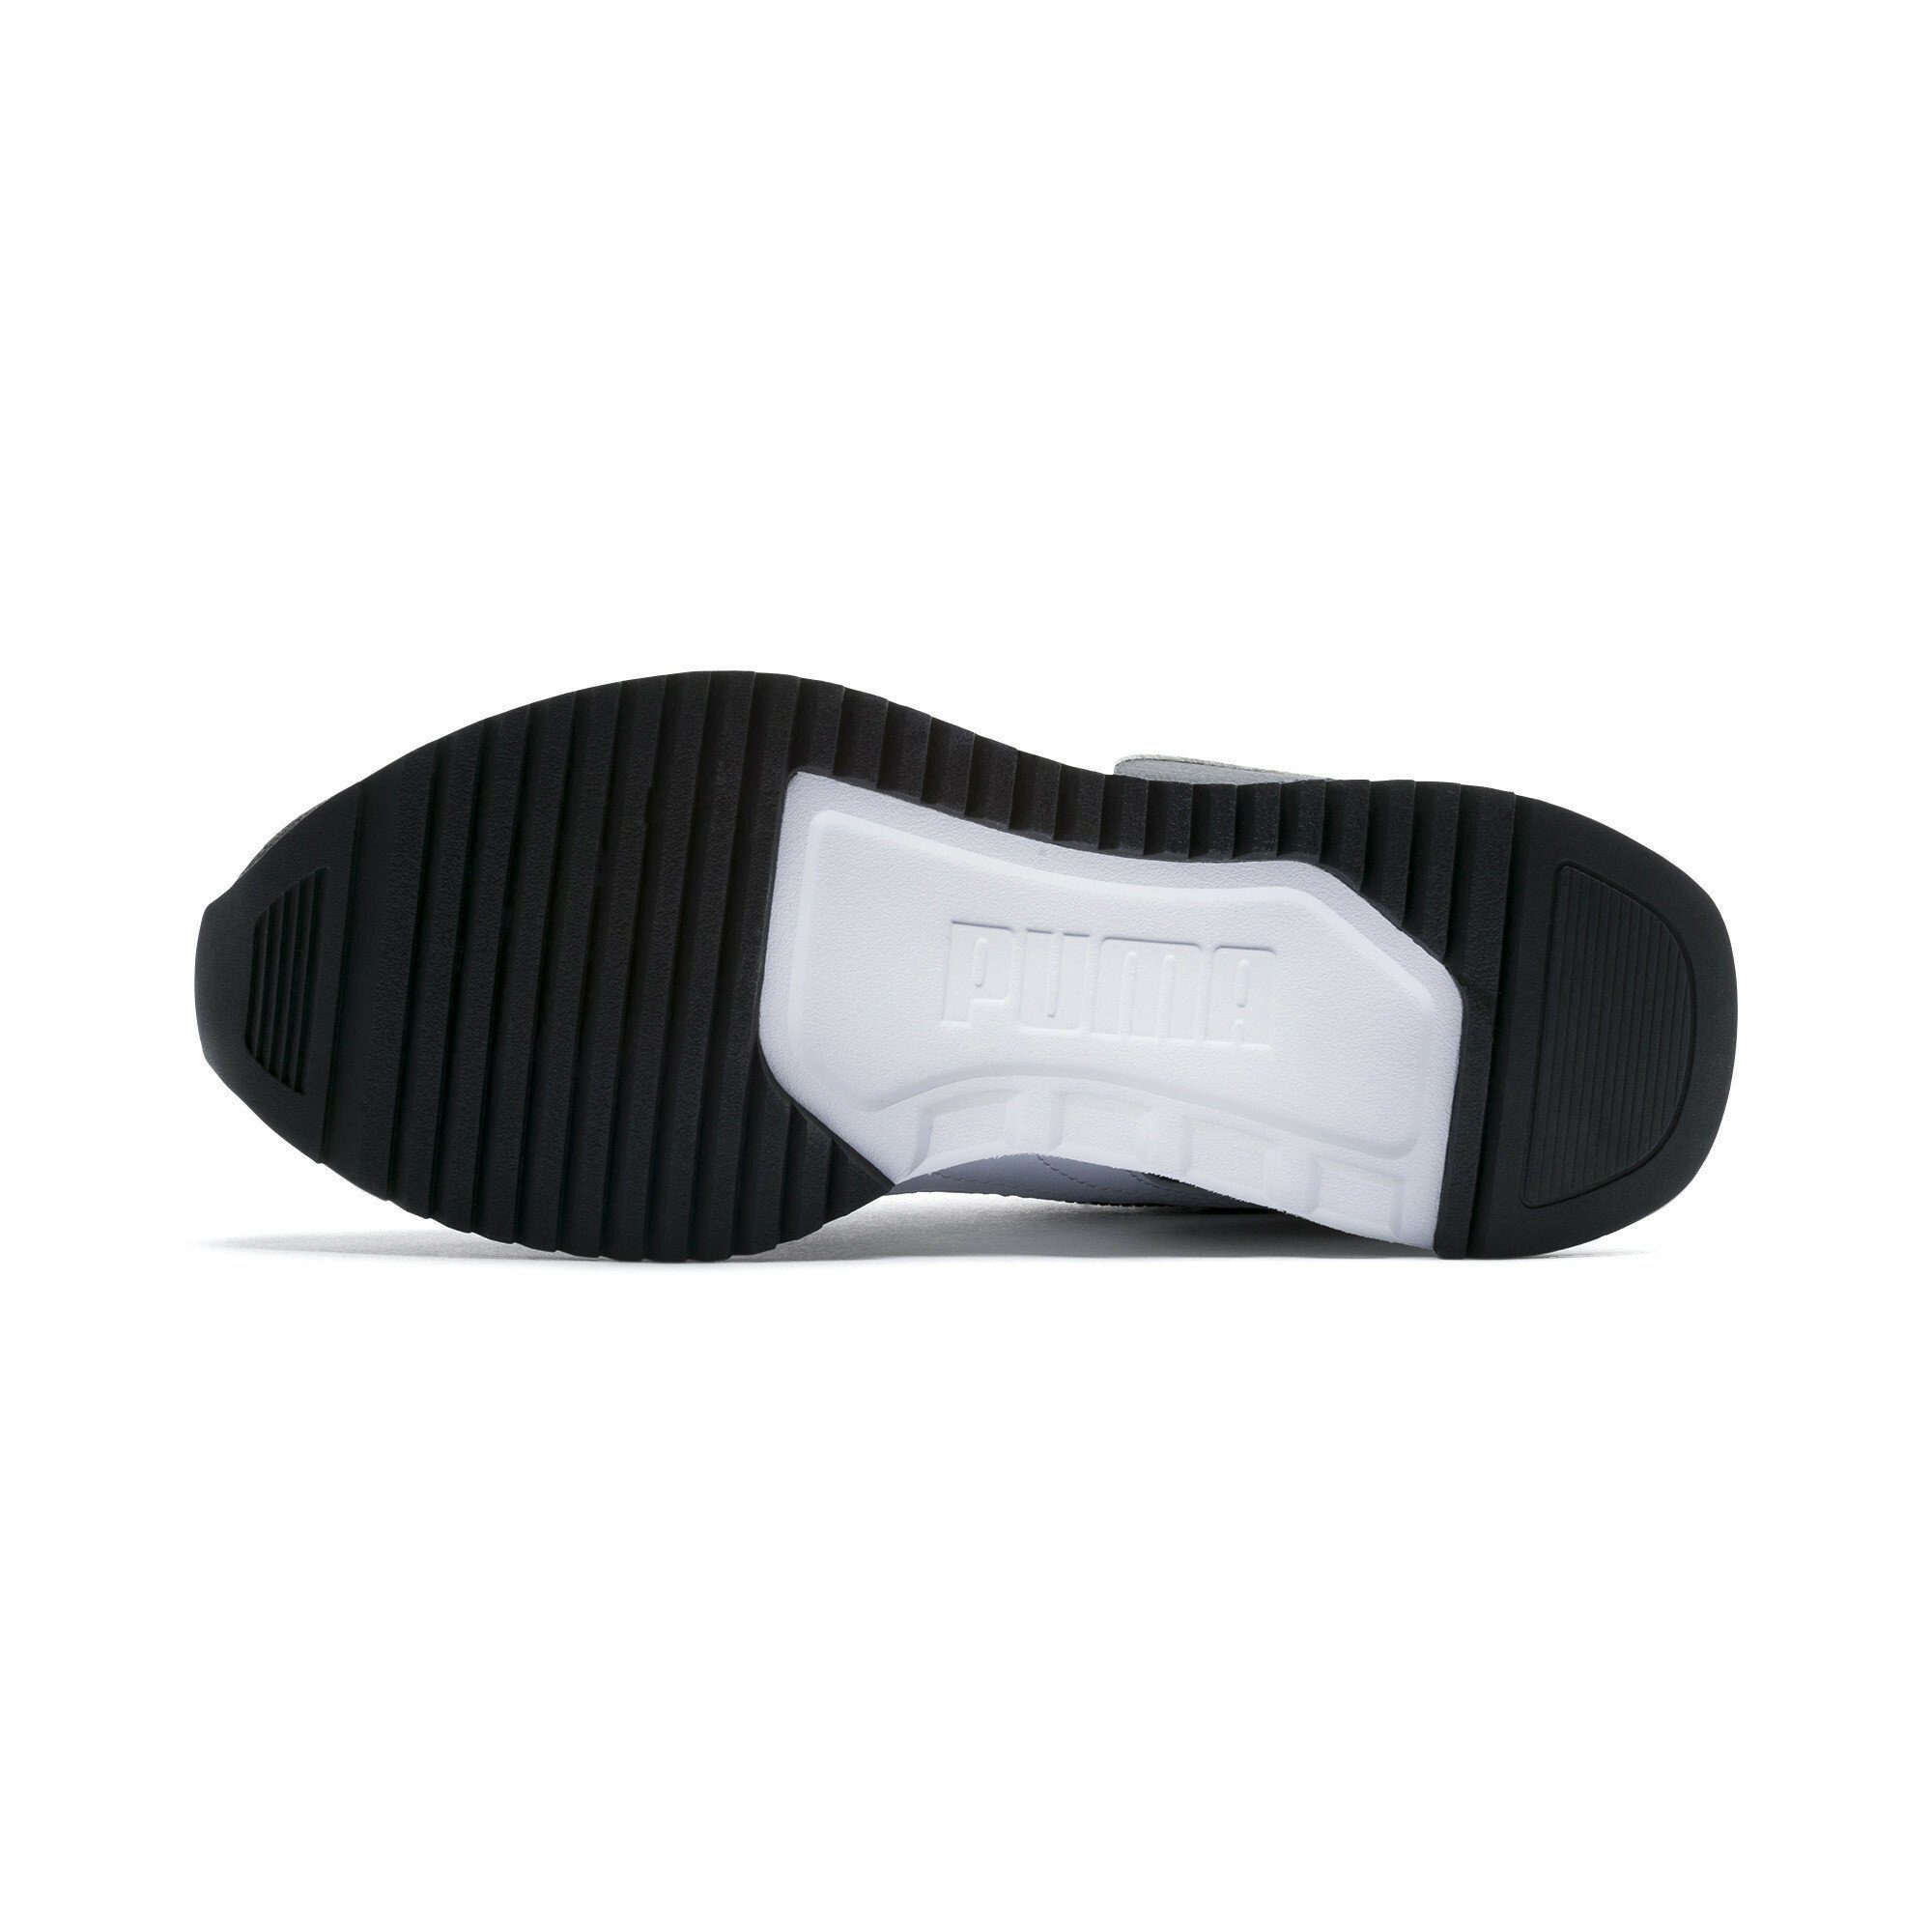 White Sneakers Black Laufschuh Jugendliche PUMA R78